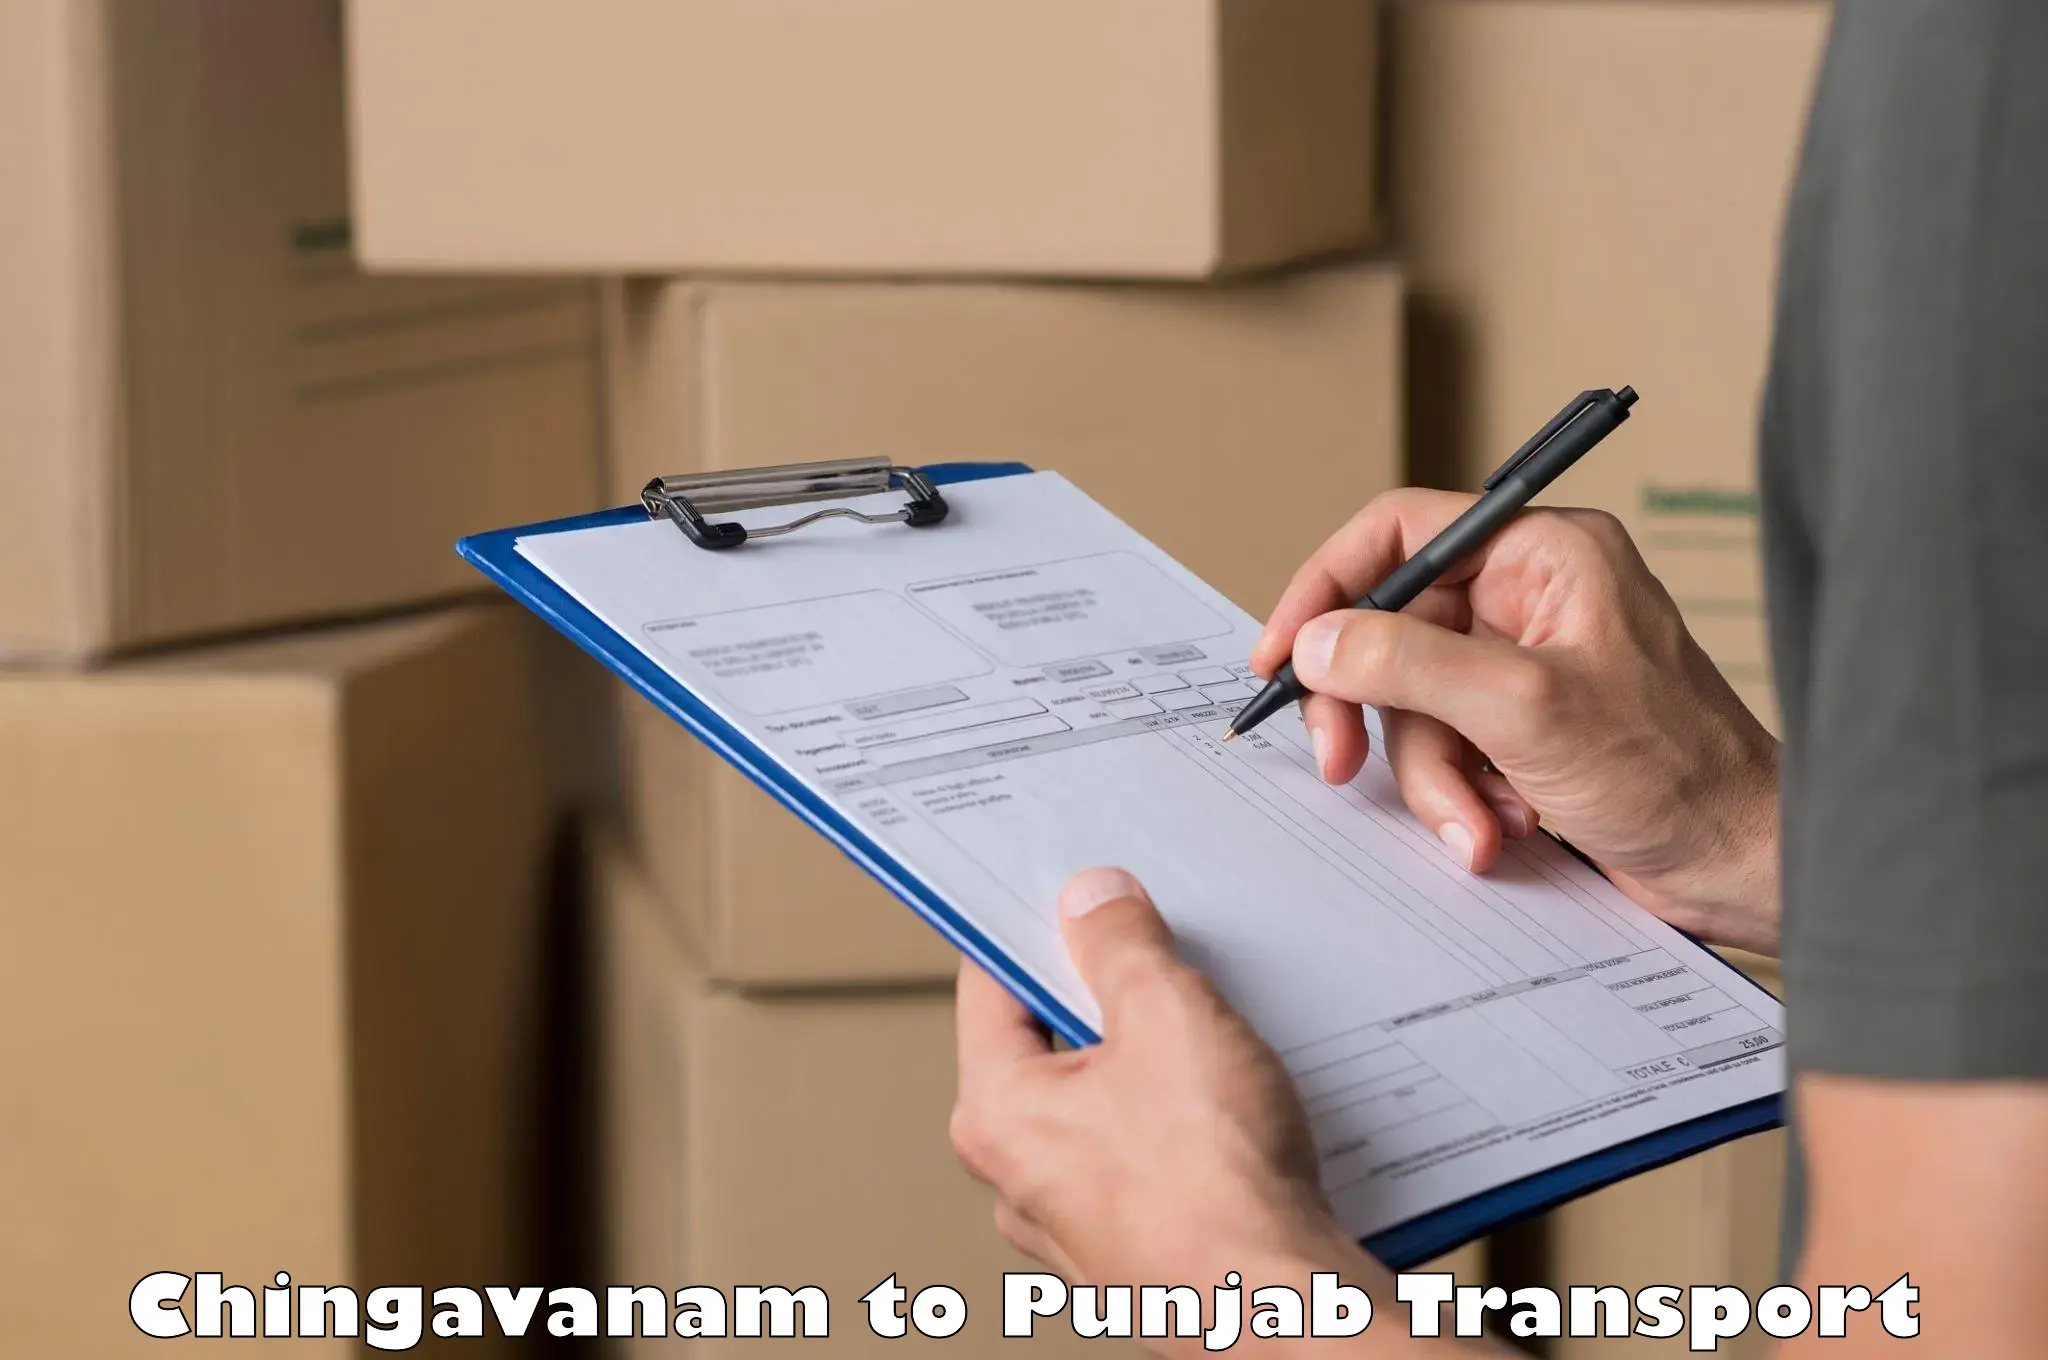 Truck transport companies in India Chingavanam to Mandi Gobindgarh